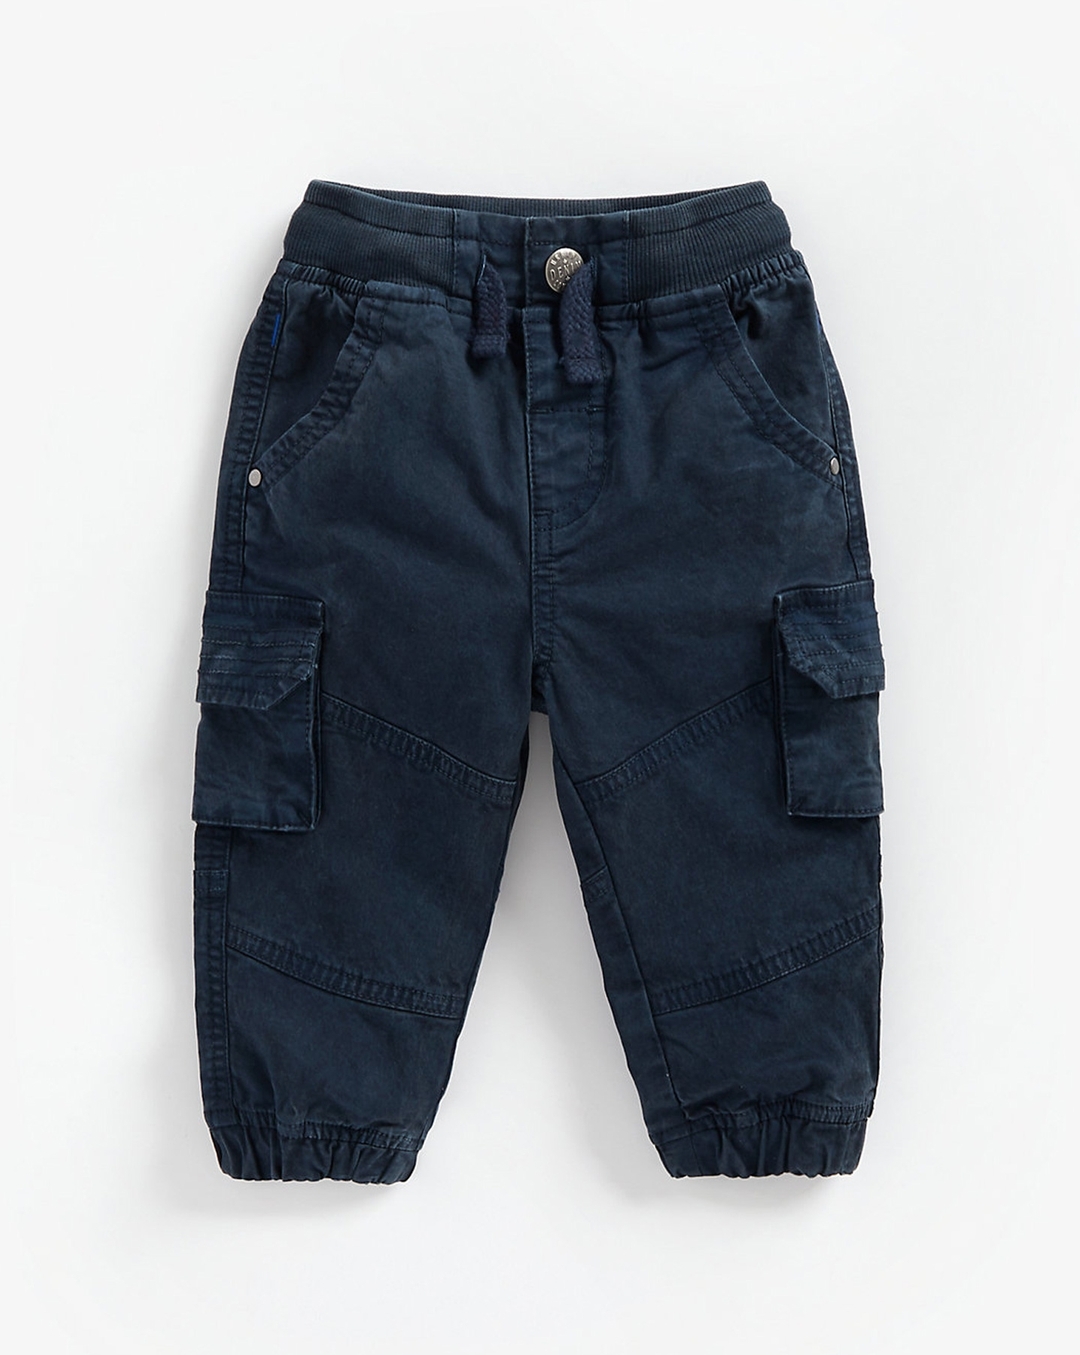 Pant  Trousers Boys Cotton Cargo Pants Size 20X30